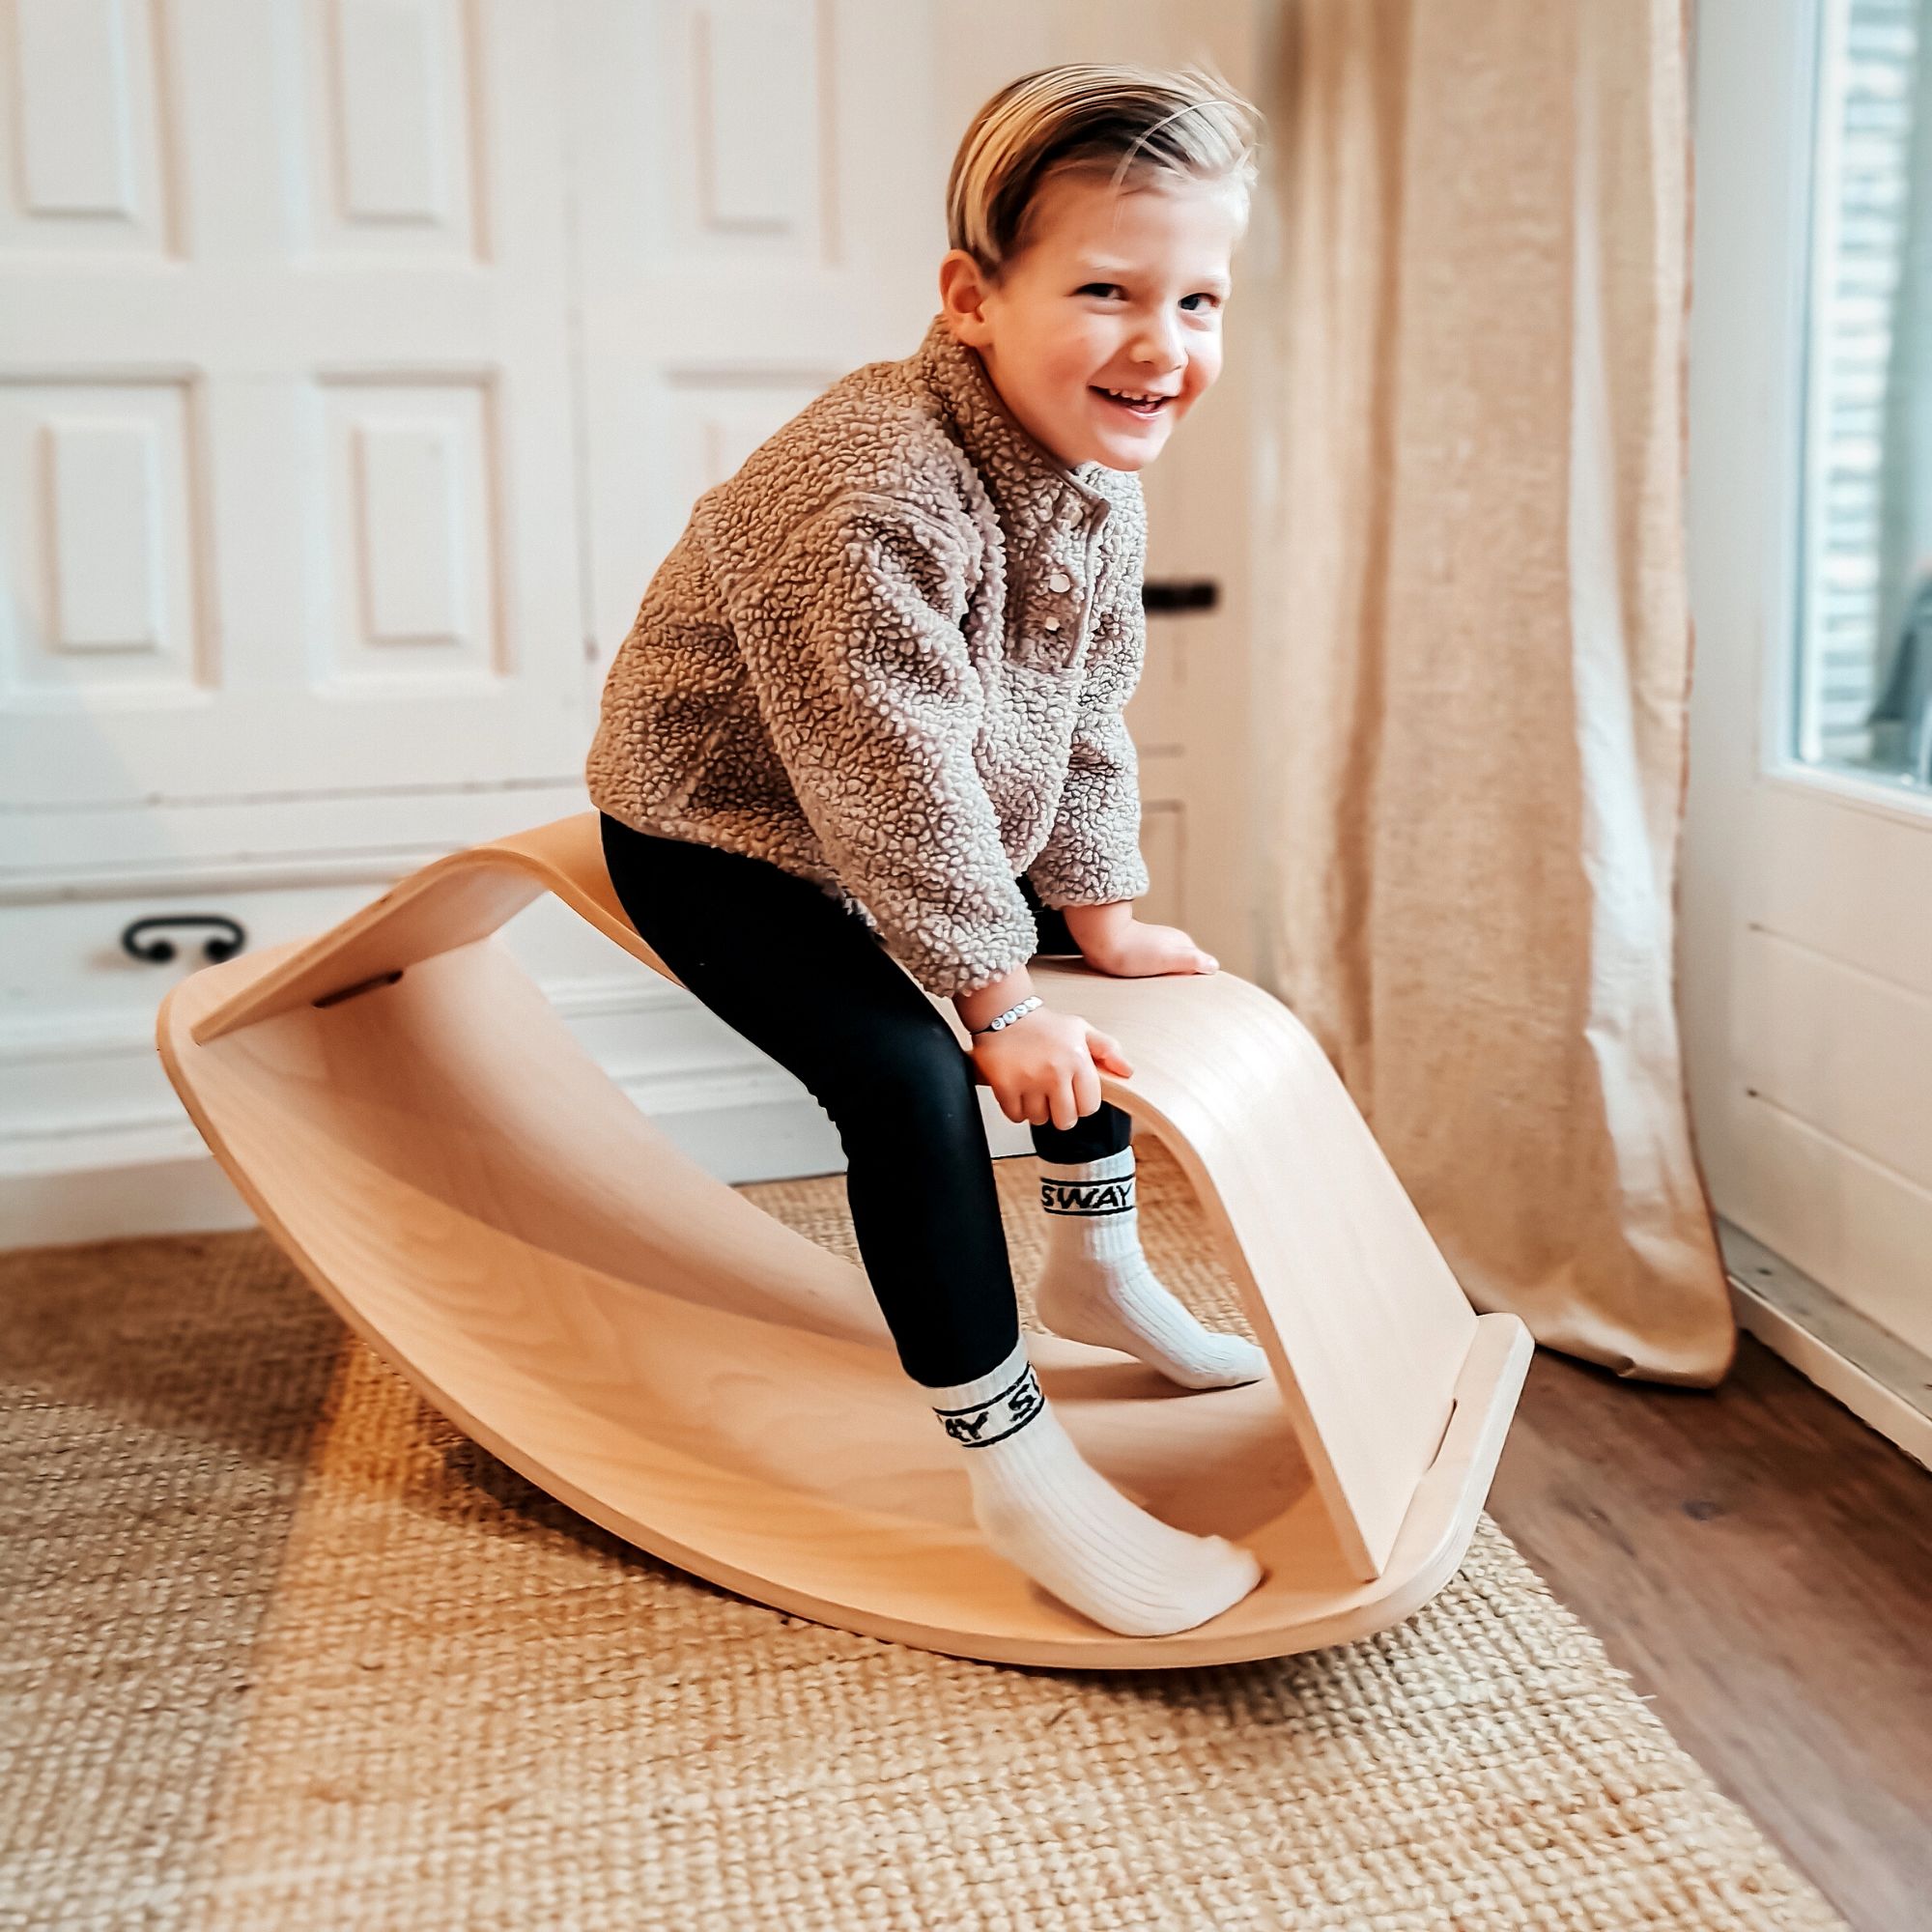 CurveLab Schaukelhocker aus Buchensperrholz für Perfect Arc Balance Board, umweltfreundlich und allergenfrei, für Kinder ab 3 Jahren, max. 80 kg, CNC-geschnitten.